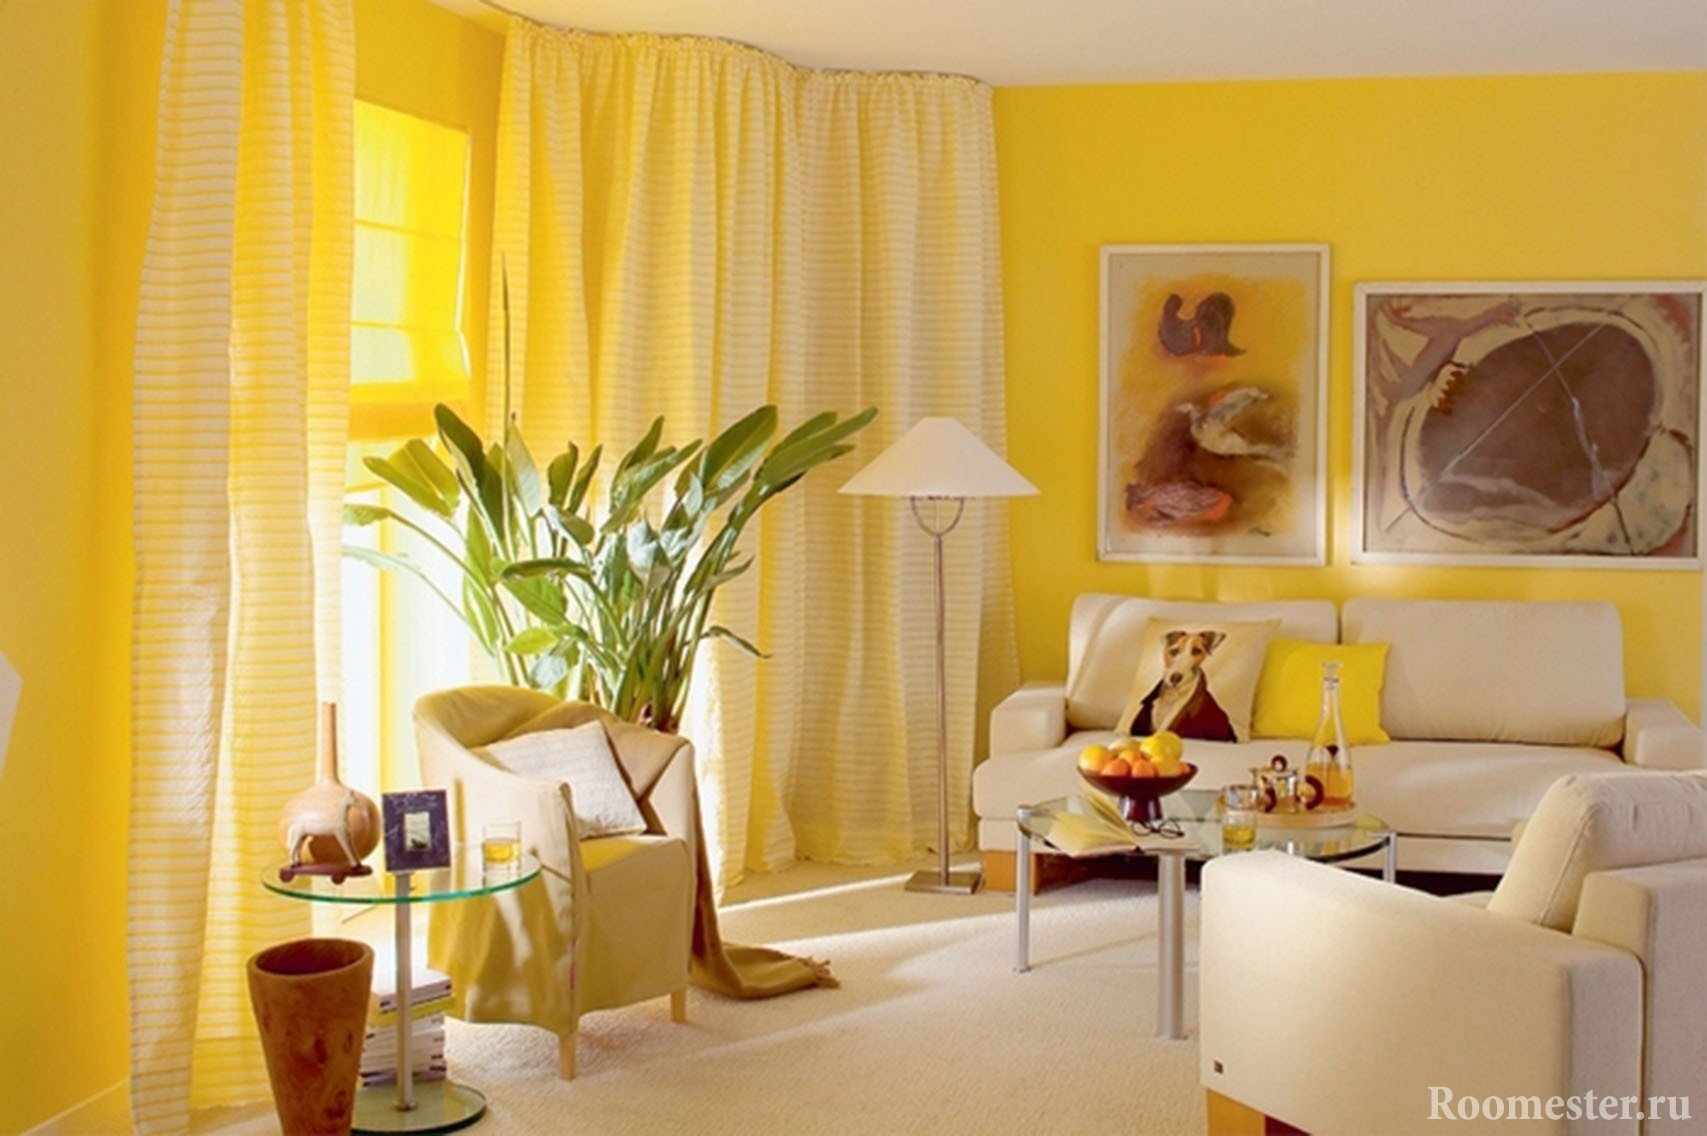 Солнечная гостиная желтого цвета